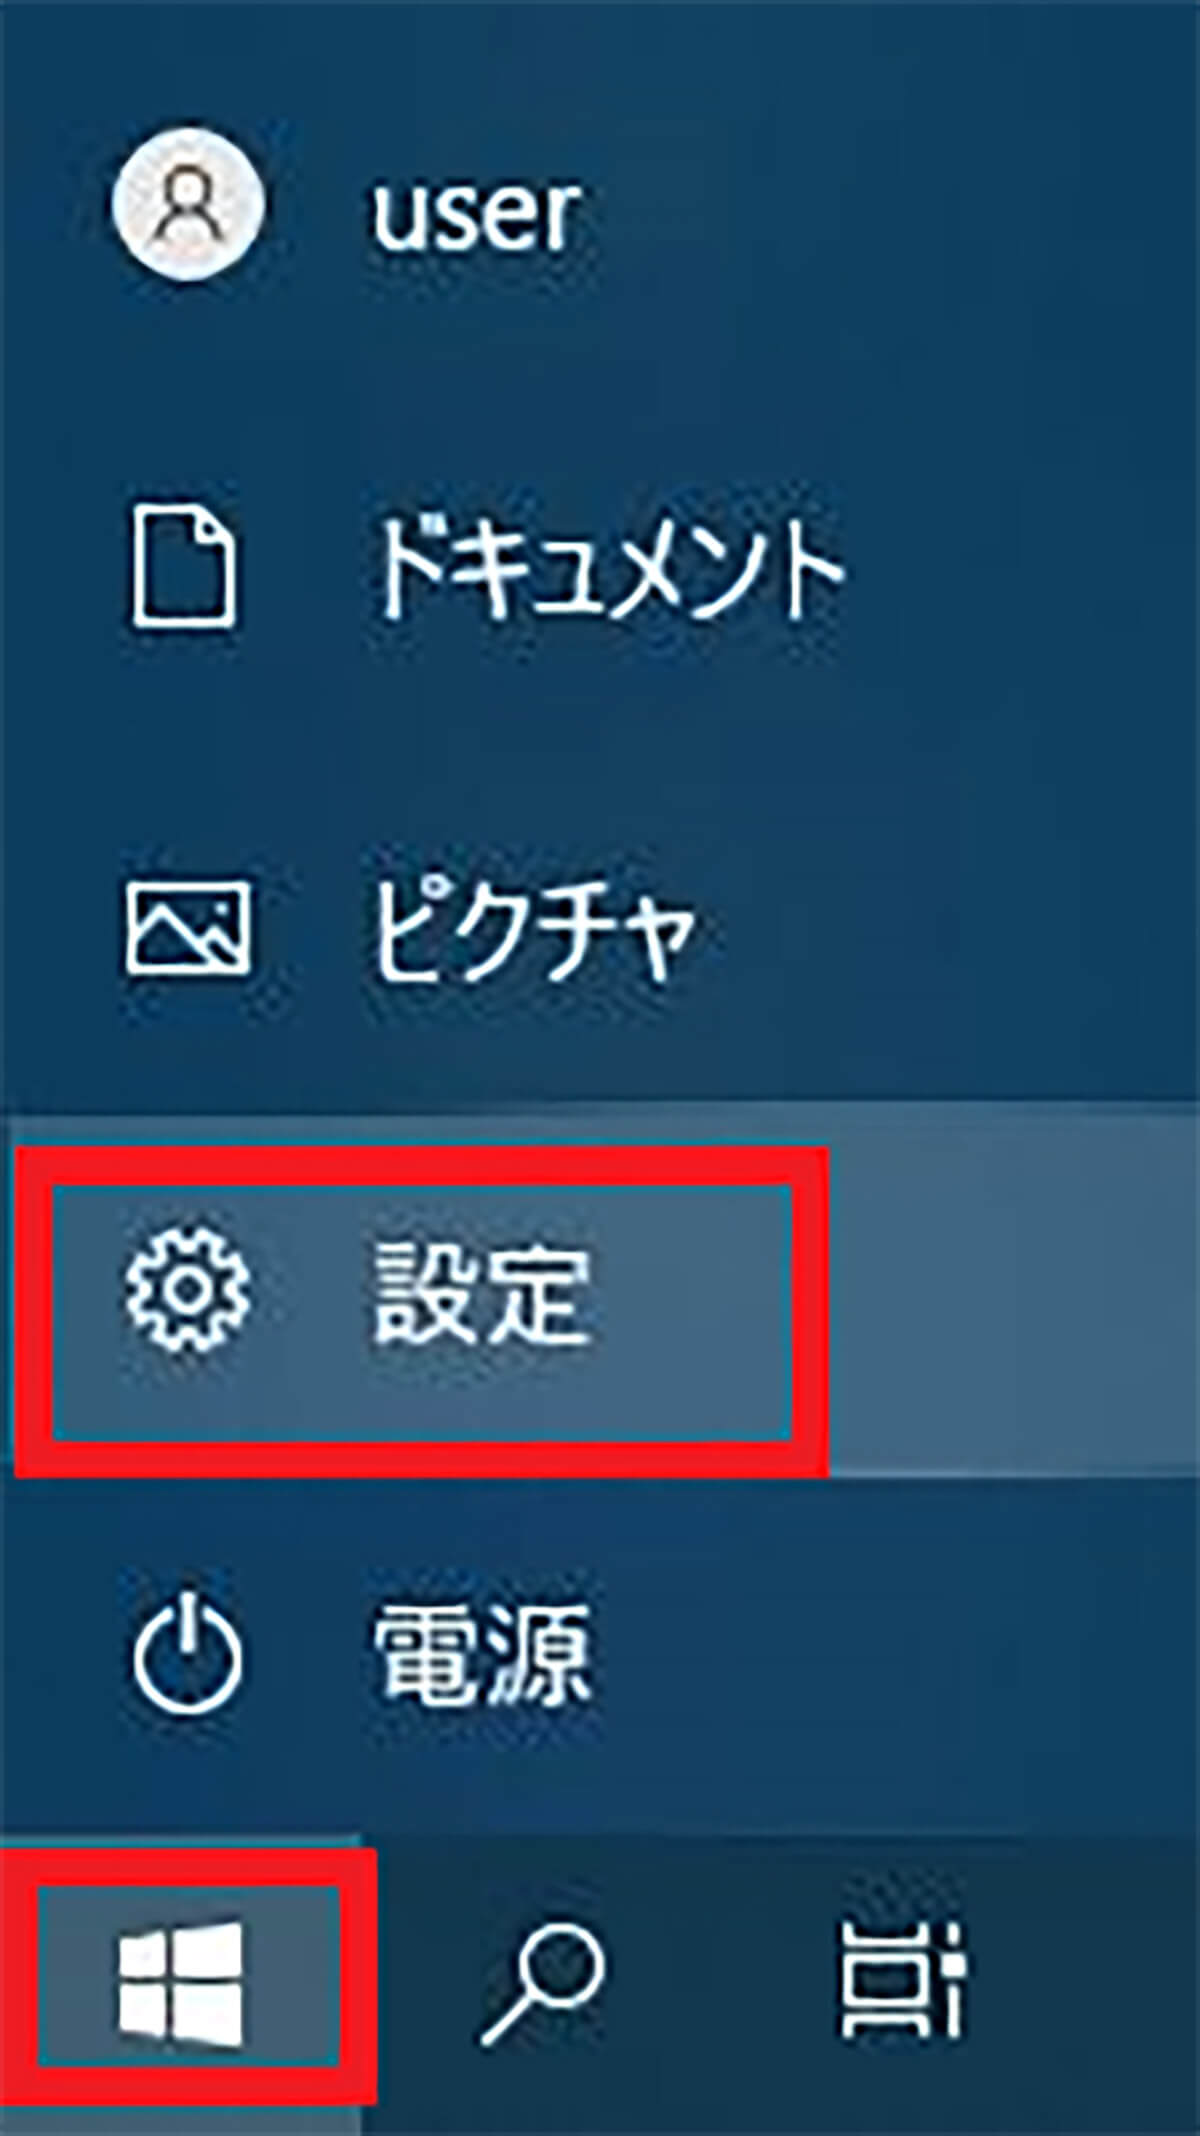 【手順①】Windowsの設定画面から「更新とセキュリティ」をクリック1